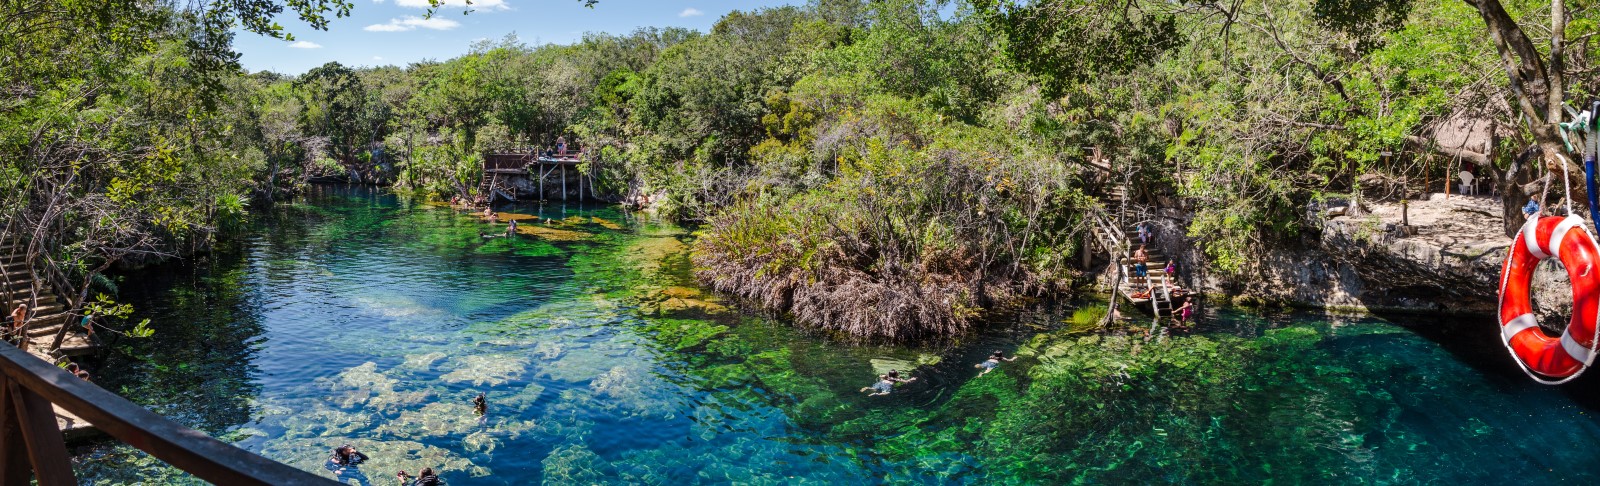 El Jardin del Eden cenote pool and the surrounding jungle